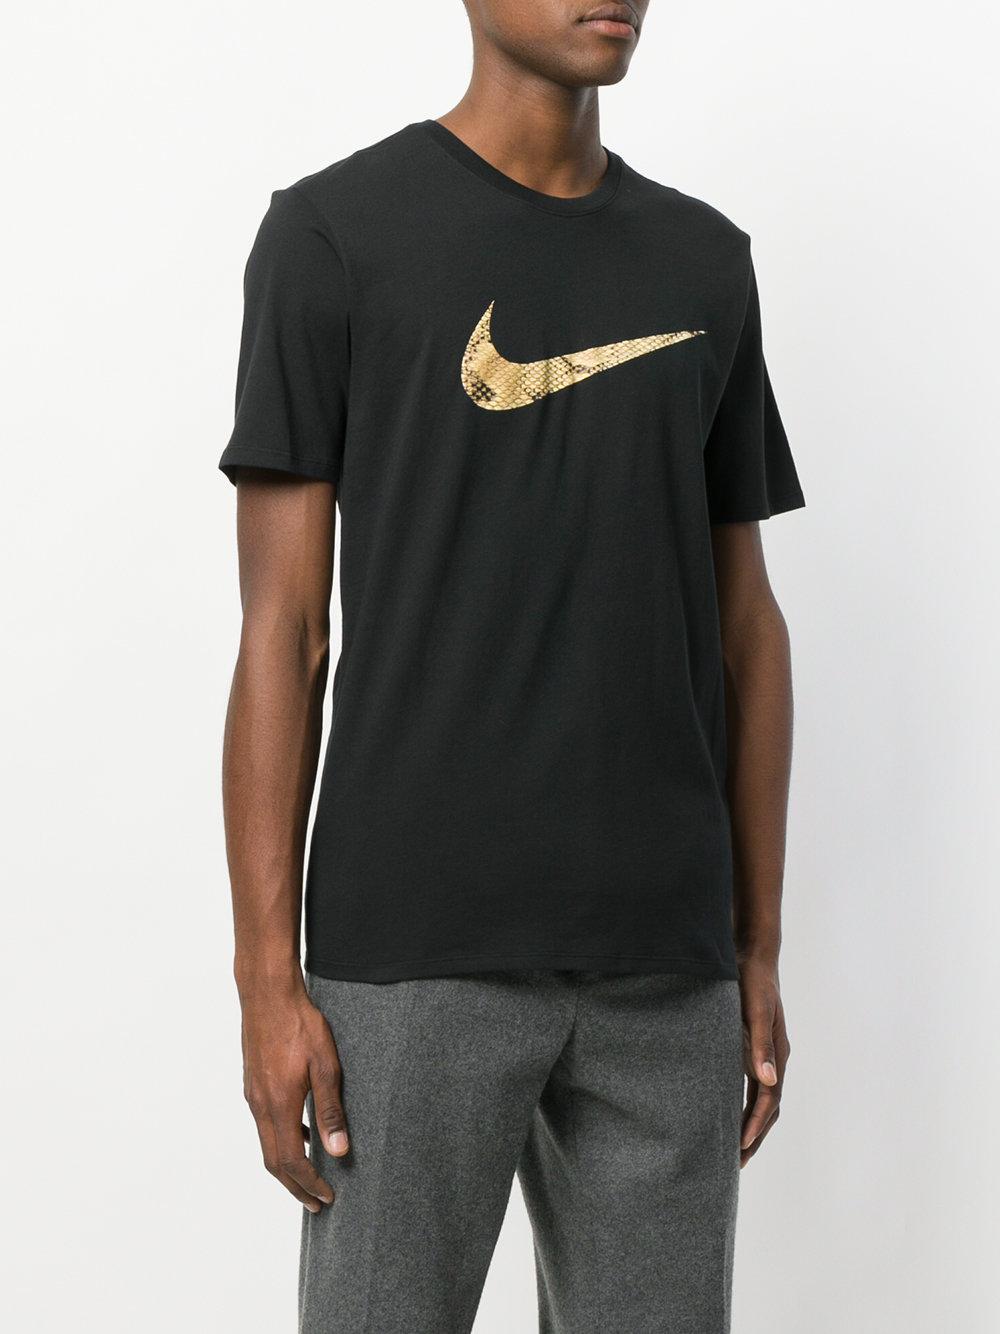 Nike Swoosh Snakeskin Print T-shirt in Black for Men | Lyst